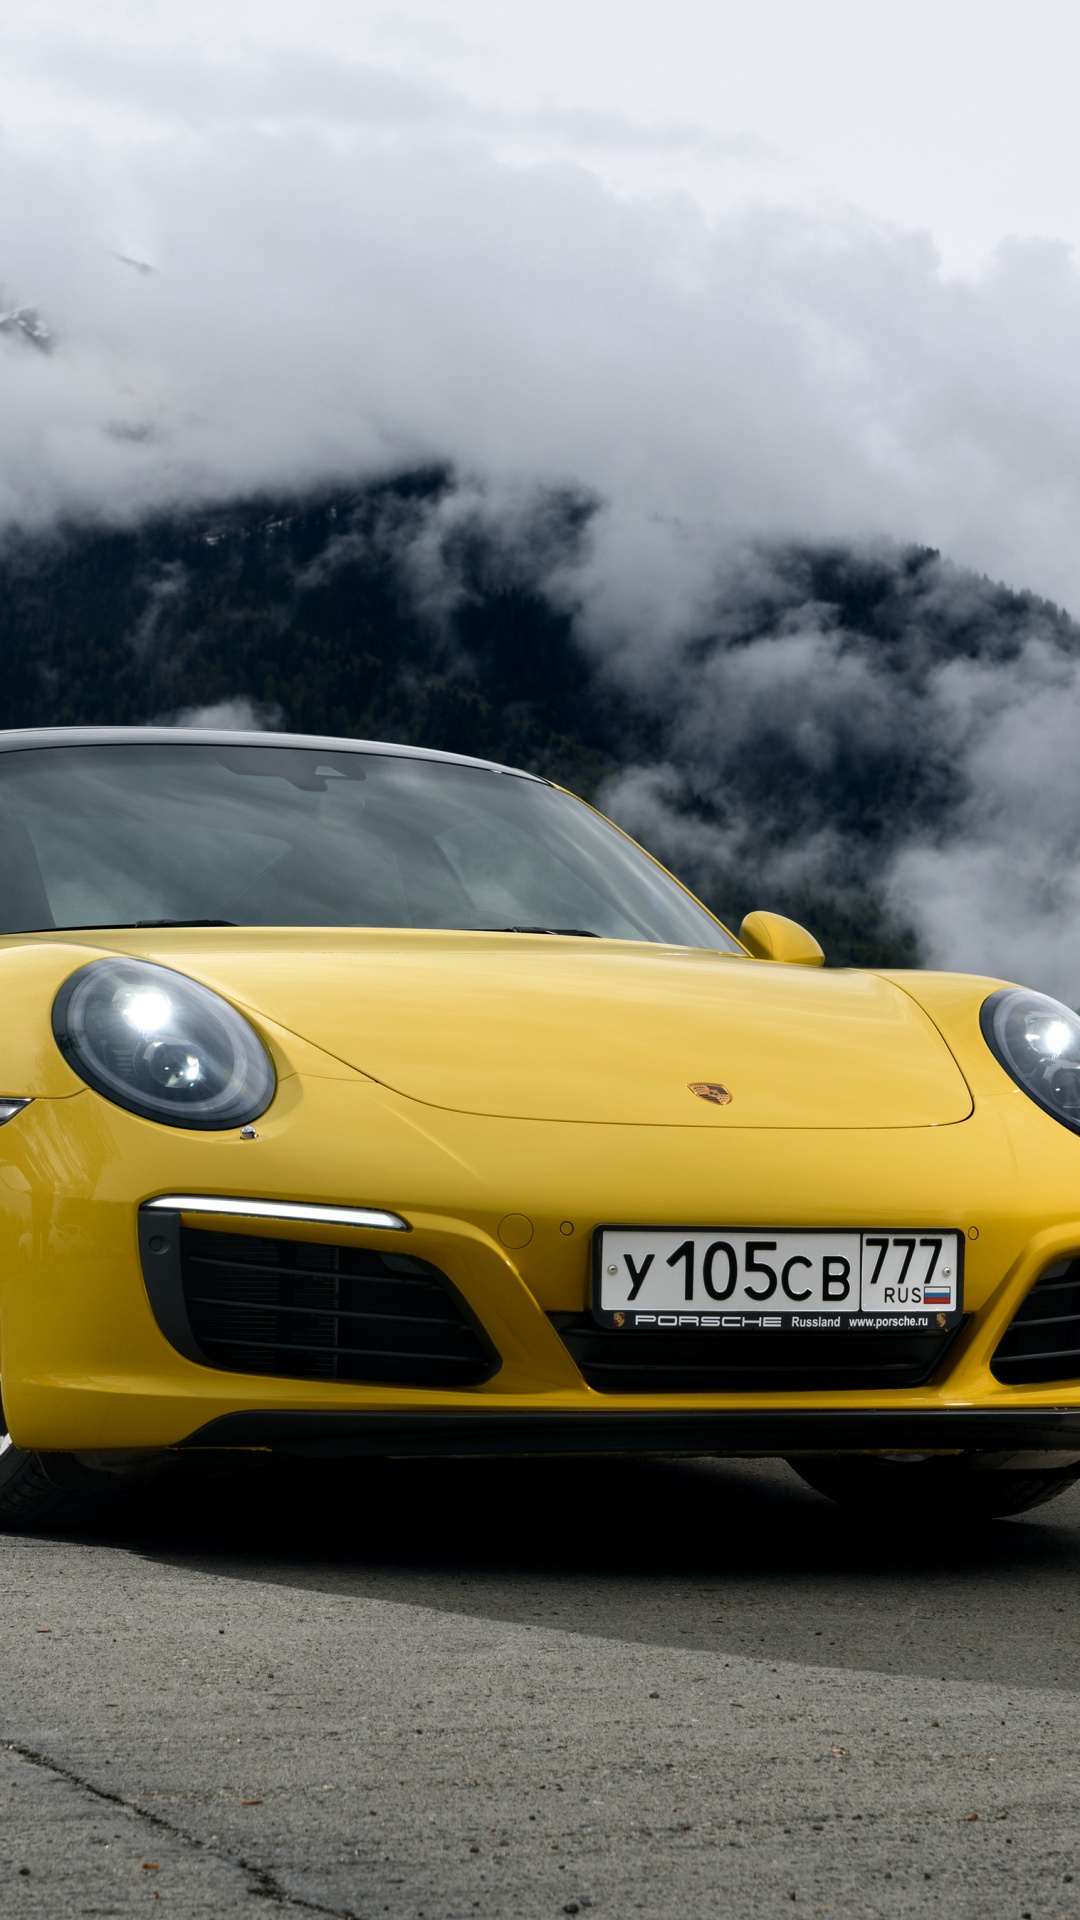 Yellow Porsche 911 on Black Asphalt Road Under Gray Clouds. Wallpaper in 1080x1920 Resolution